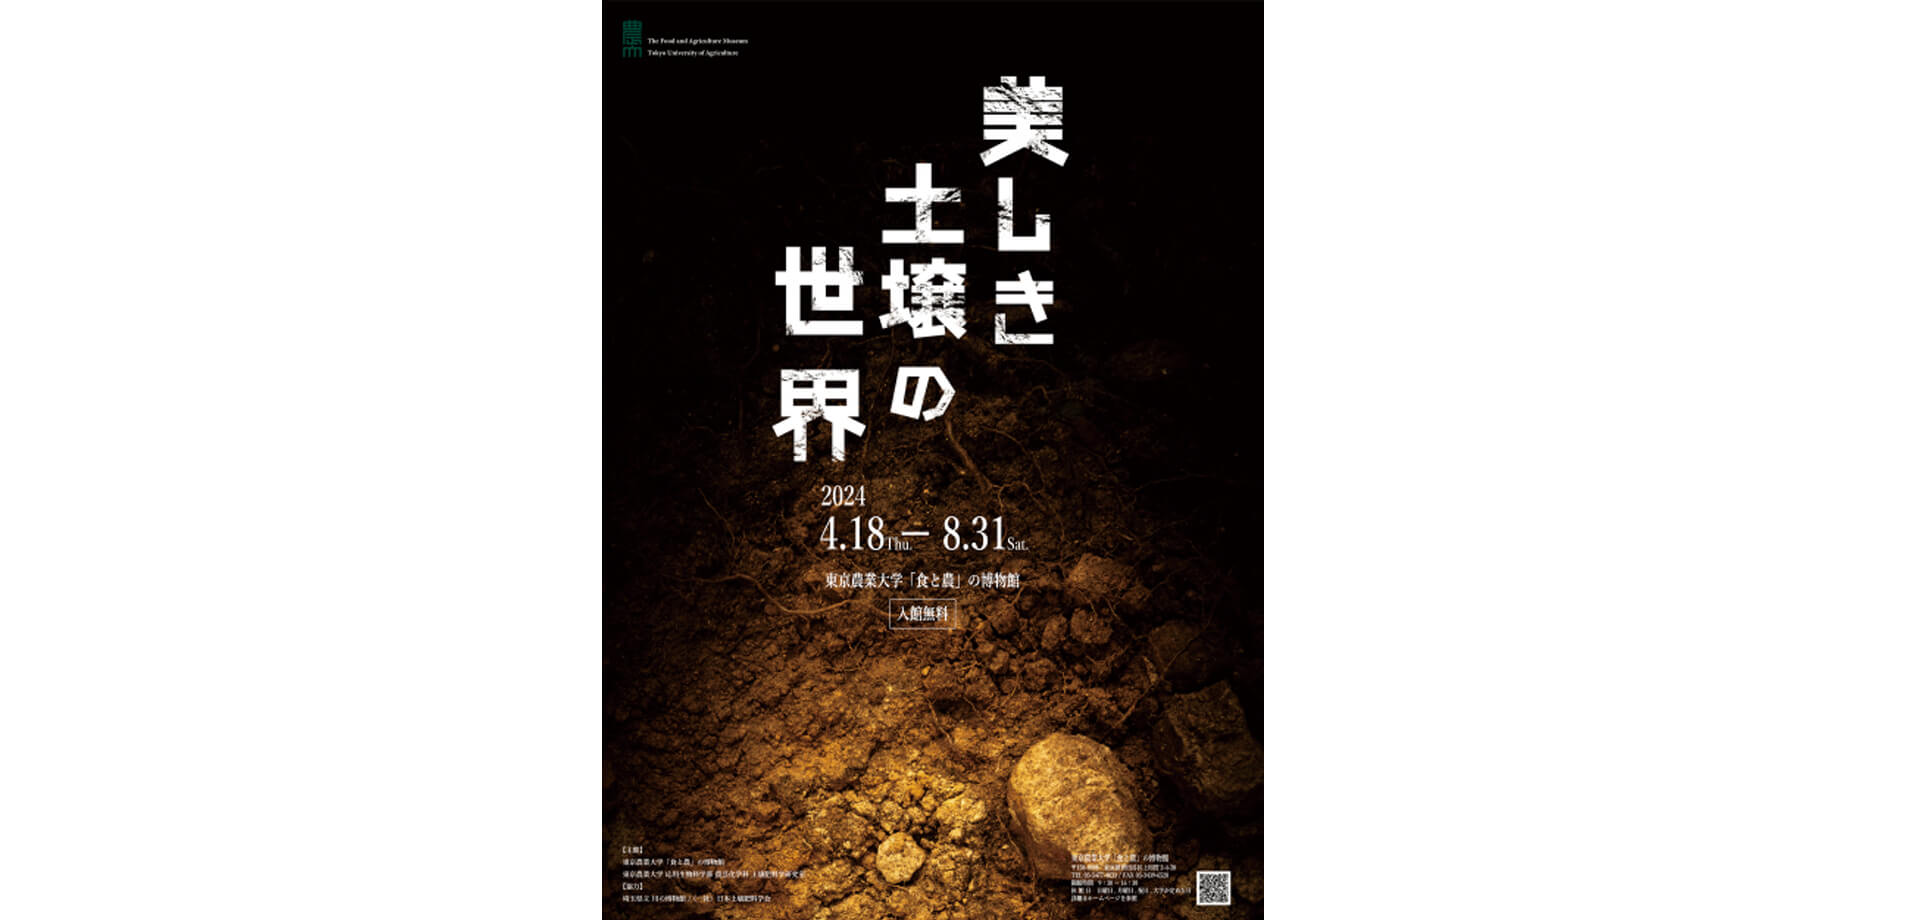 東京農業大学 企画展「美しき土壌の世界」ポスター